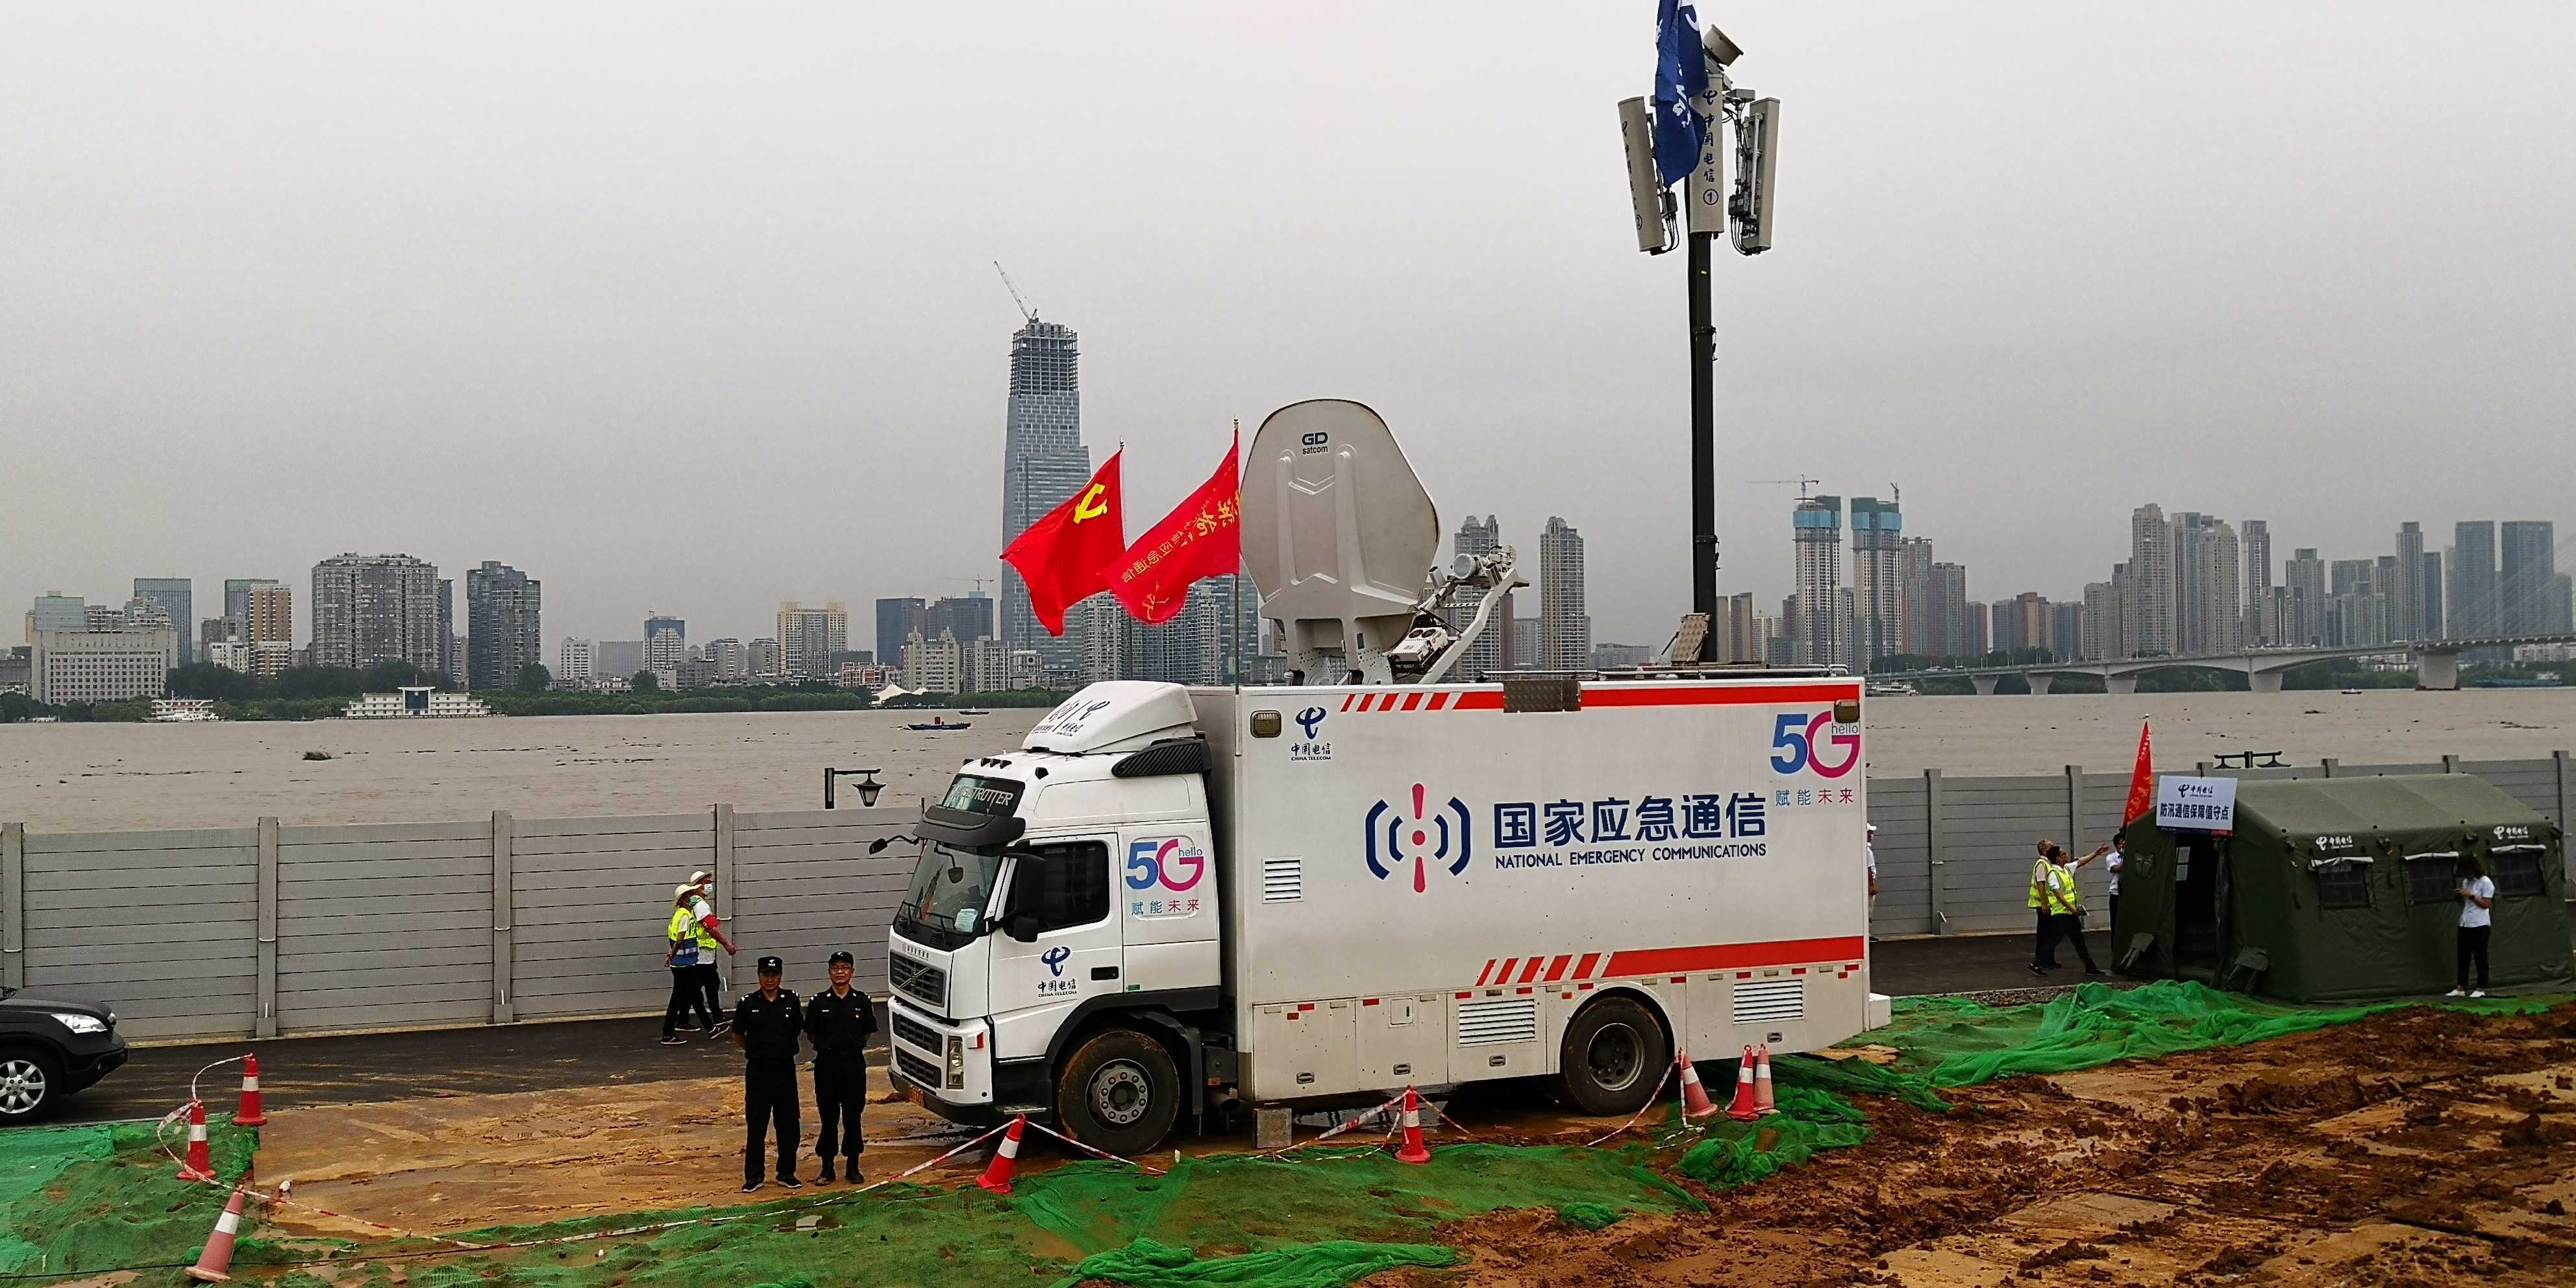 武汉电信为了保证防汛通信畅通,调用了应急通信保障